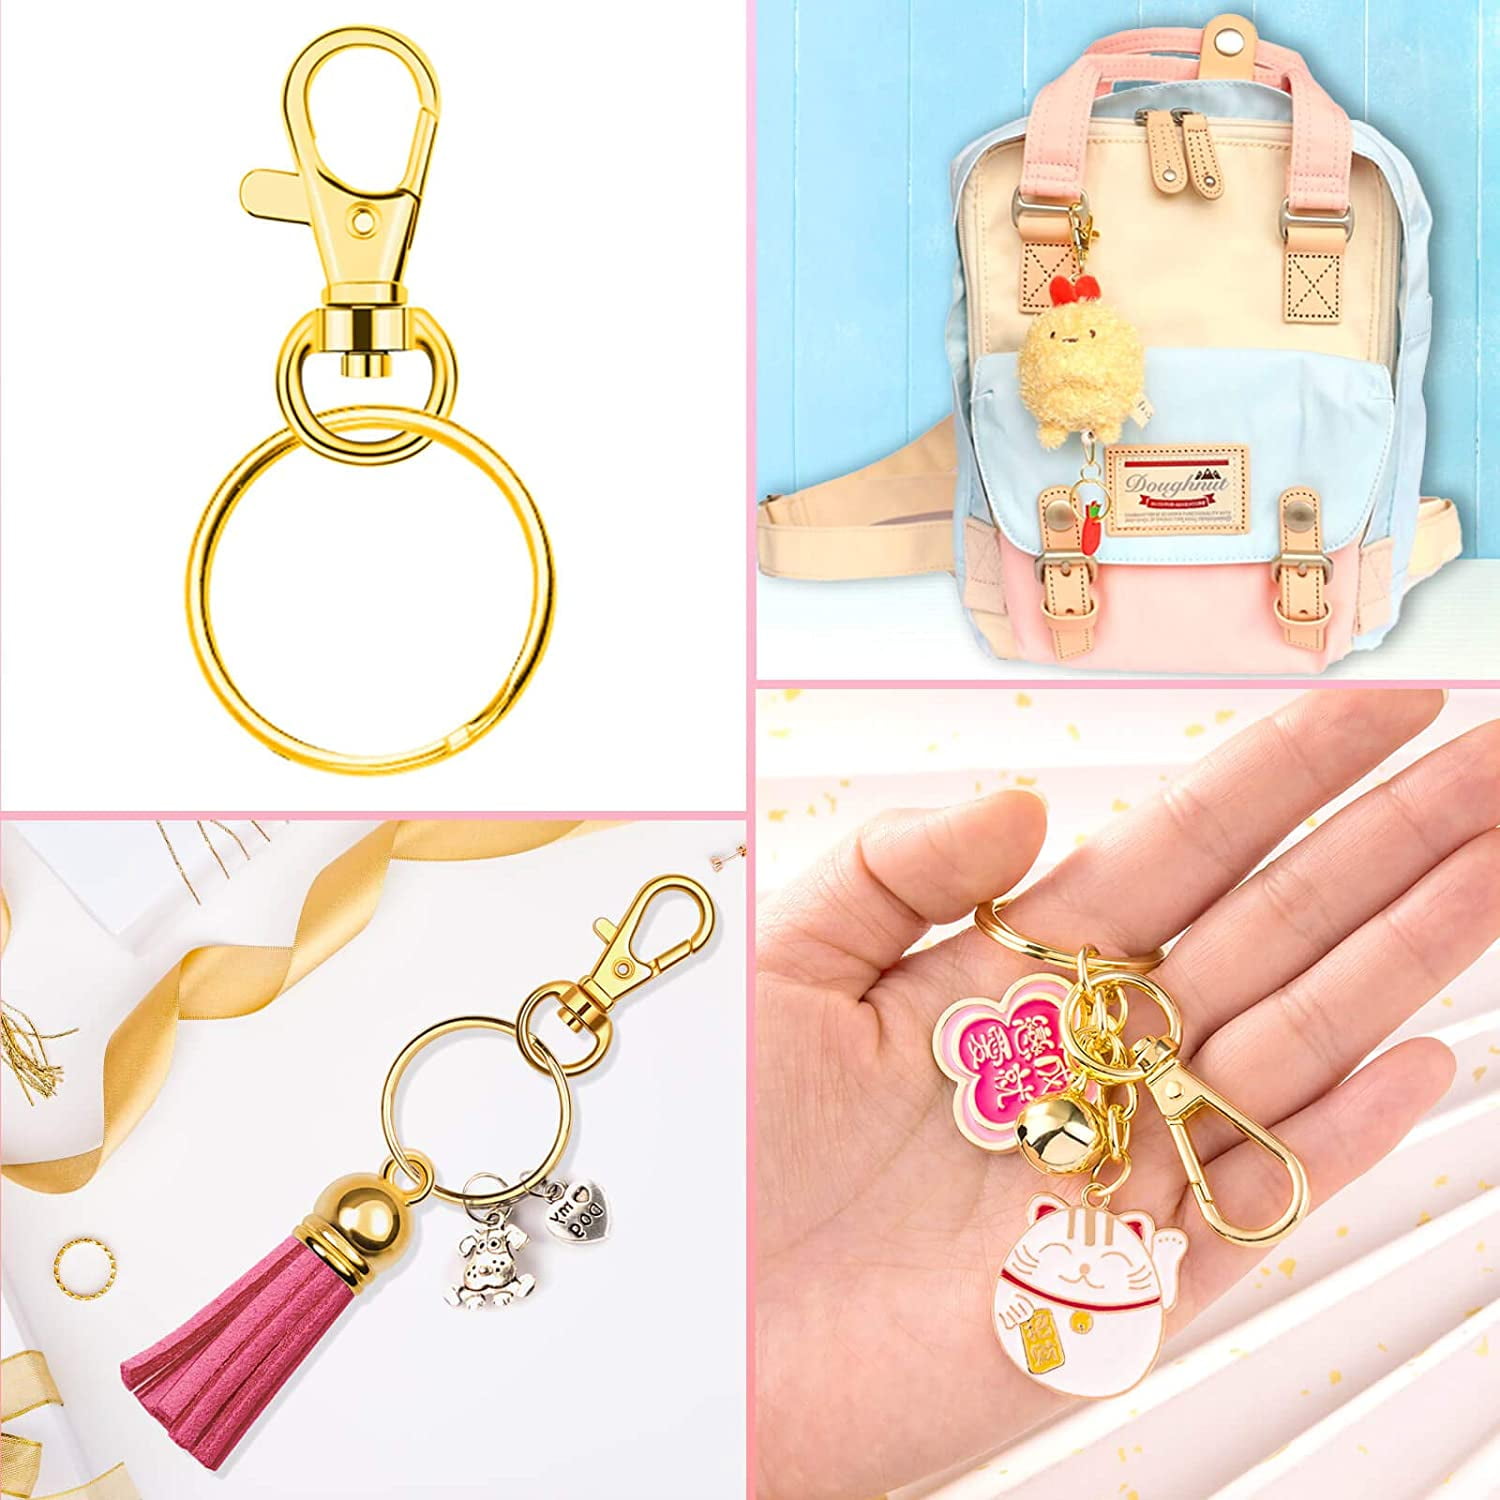 PAXCOO Keychain Tassels Bulk, Small Tassels for Jewelry Making